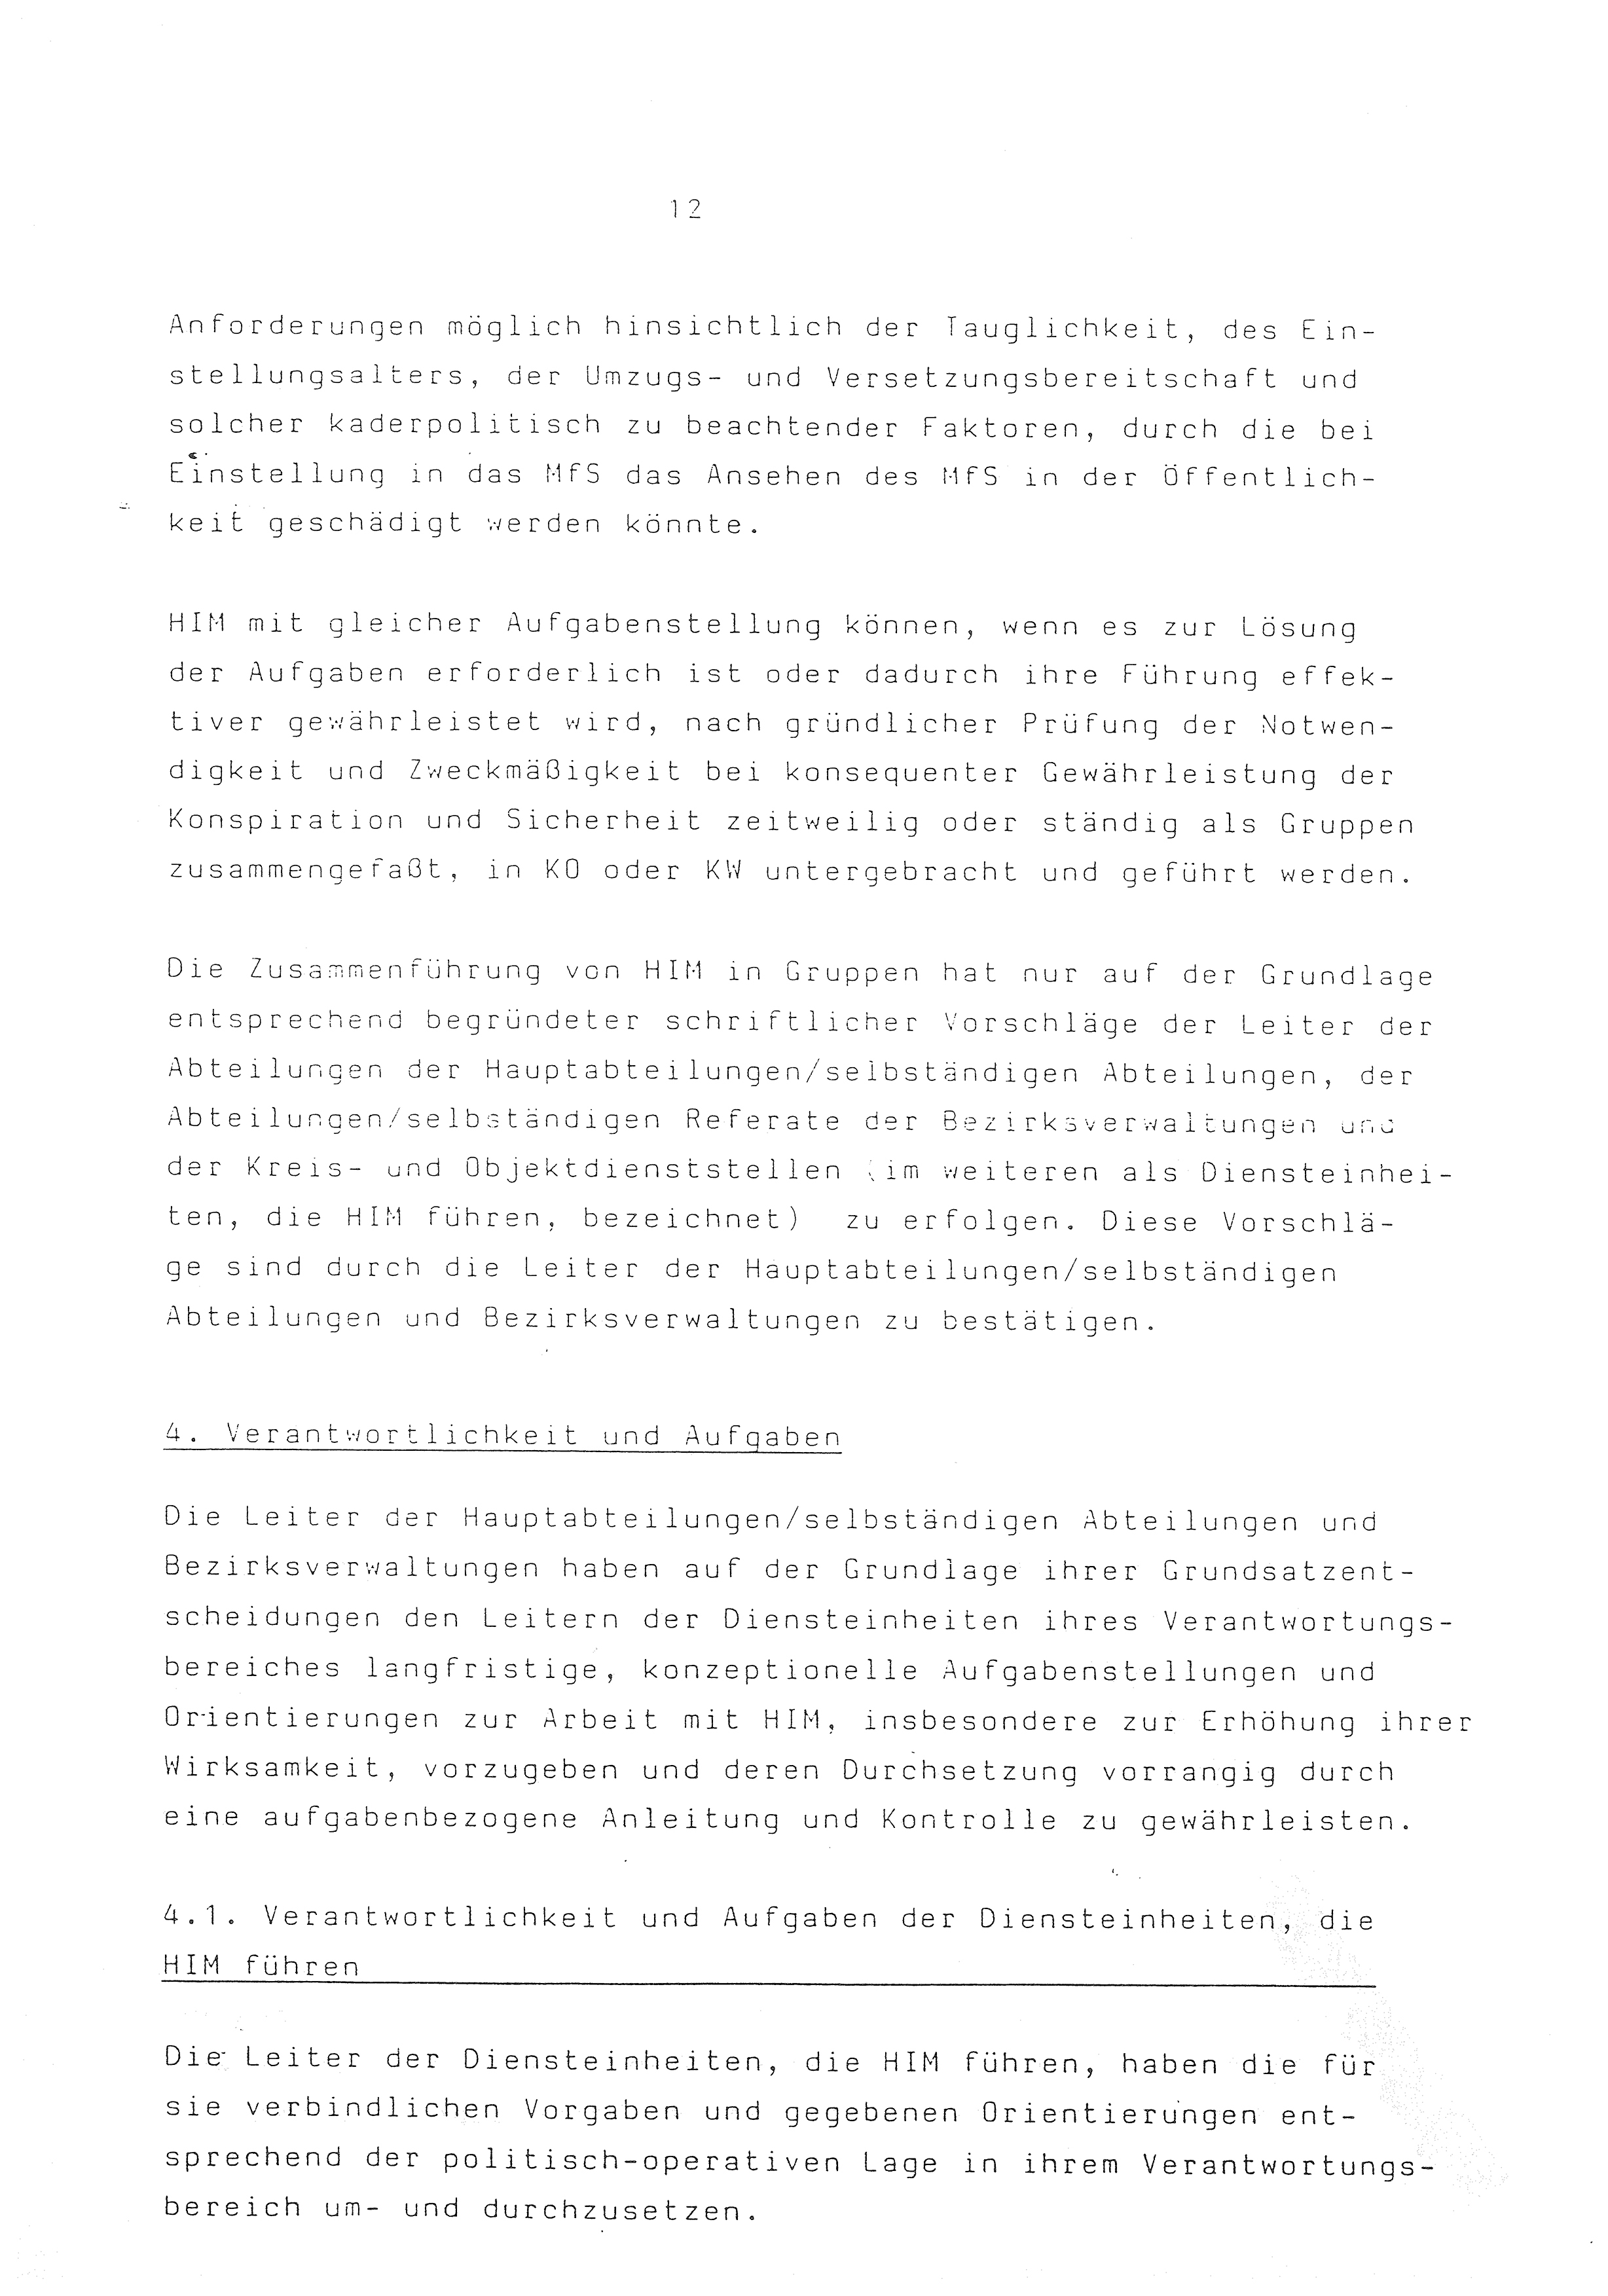 2. Durchführungsbestimmung zur Richtlinie 1/79 über die Arbeit mit hauptamtlichen Mitarbeitern des MfS (HIM), Deutsche Demokratische Republik (DDR), Ministerium für Staatssicherheit (MfS), Der Minister (Mielke), Geheime Verschlußsache (GVS) ooo8-44/86, Berlin 1986, Seite 12 (2. DB RL 1/79 DDR MfS Min. GVS ooo8-44/86 1986, S. 12)